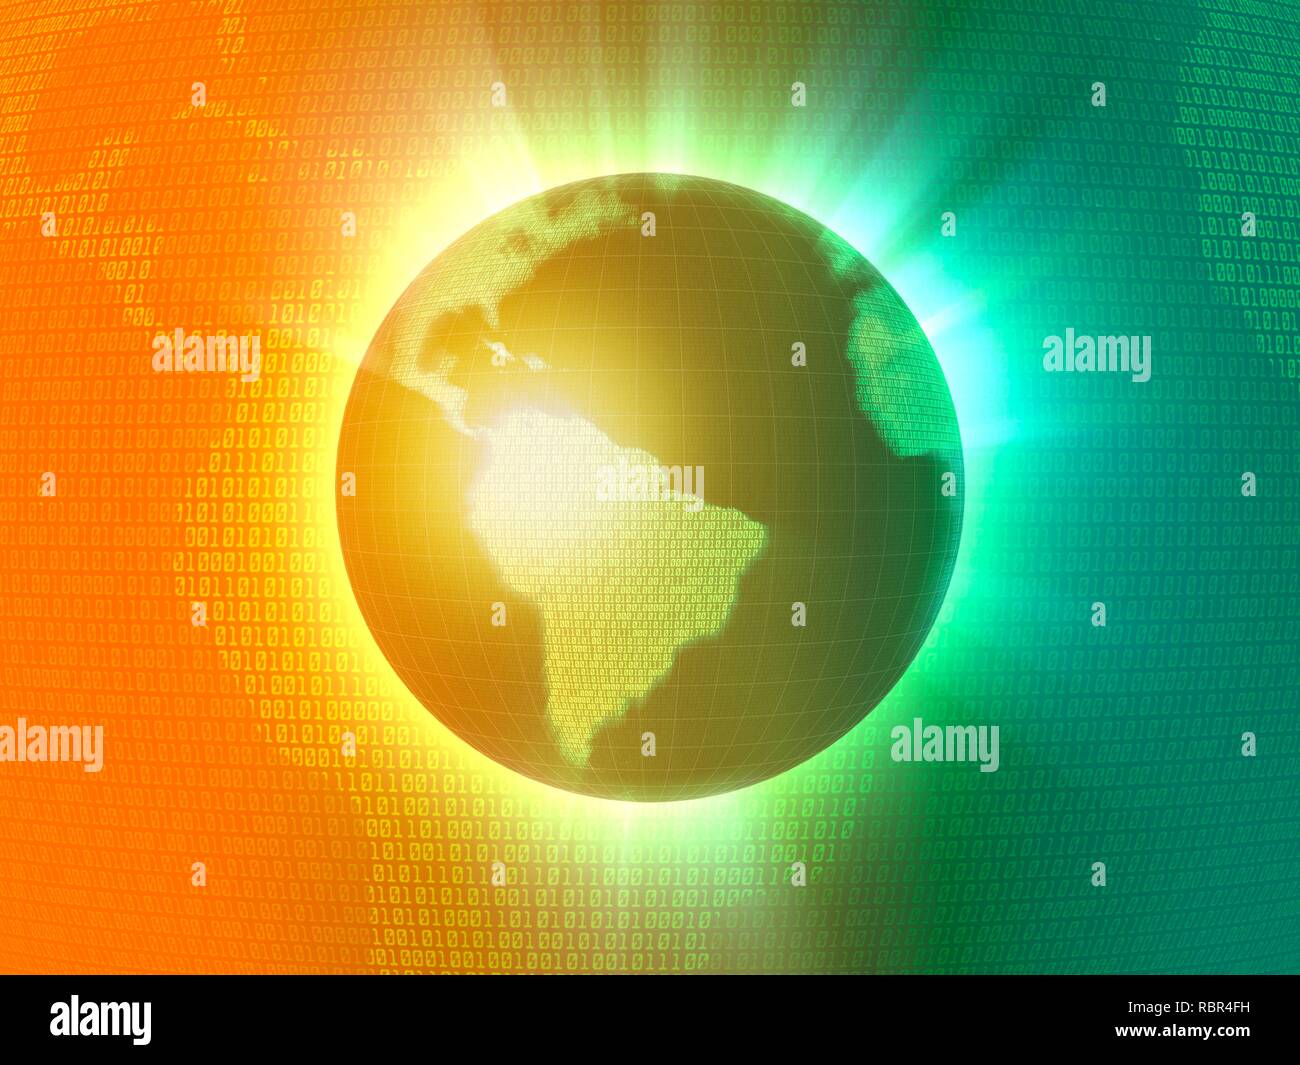 Abbildung der Erde, mit der Kontinente in binären Code dargestellt. Dies könnte die Globalisierung dar, das Internet, digitale Währung oder der Technologie im allgemeinen. Stockfoto